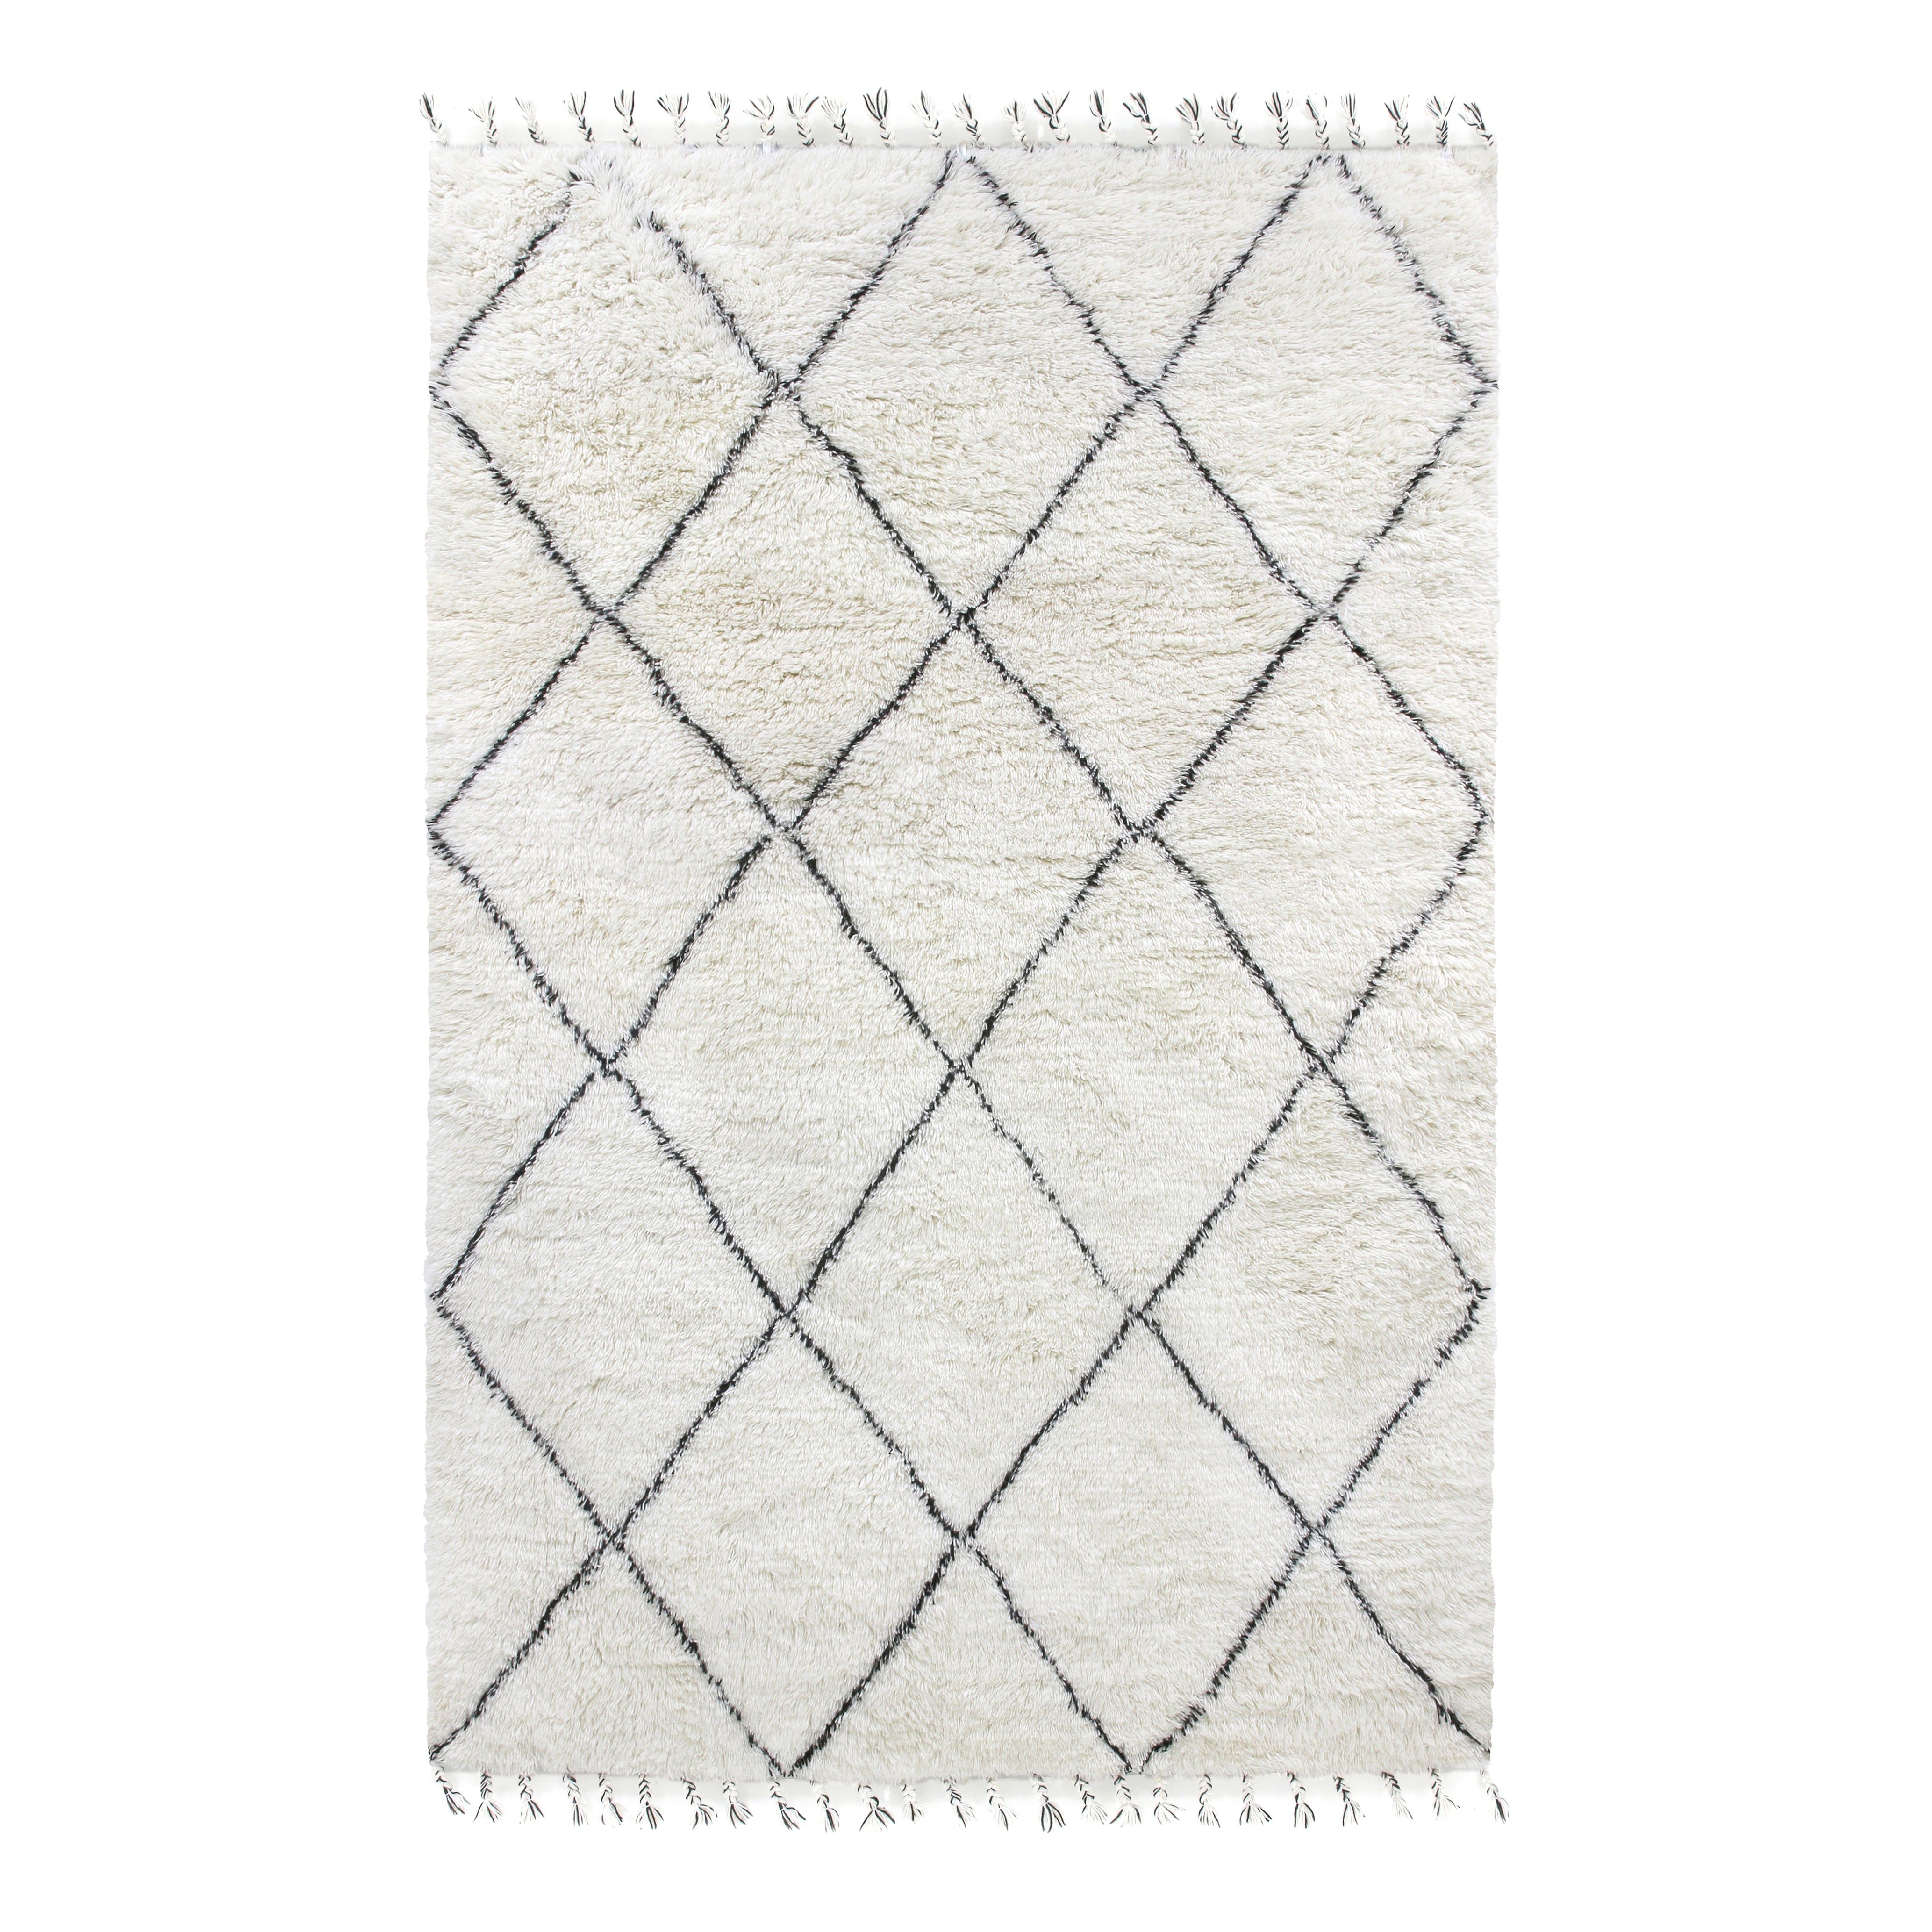 Wool carpet BERBER white, HKliving, Eye on Design